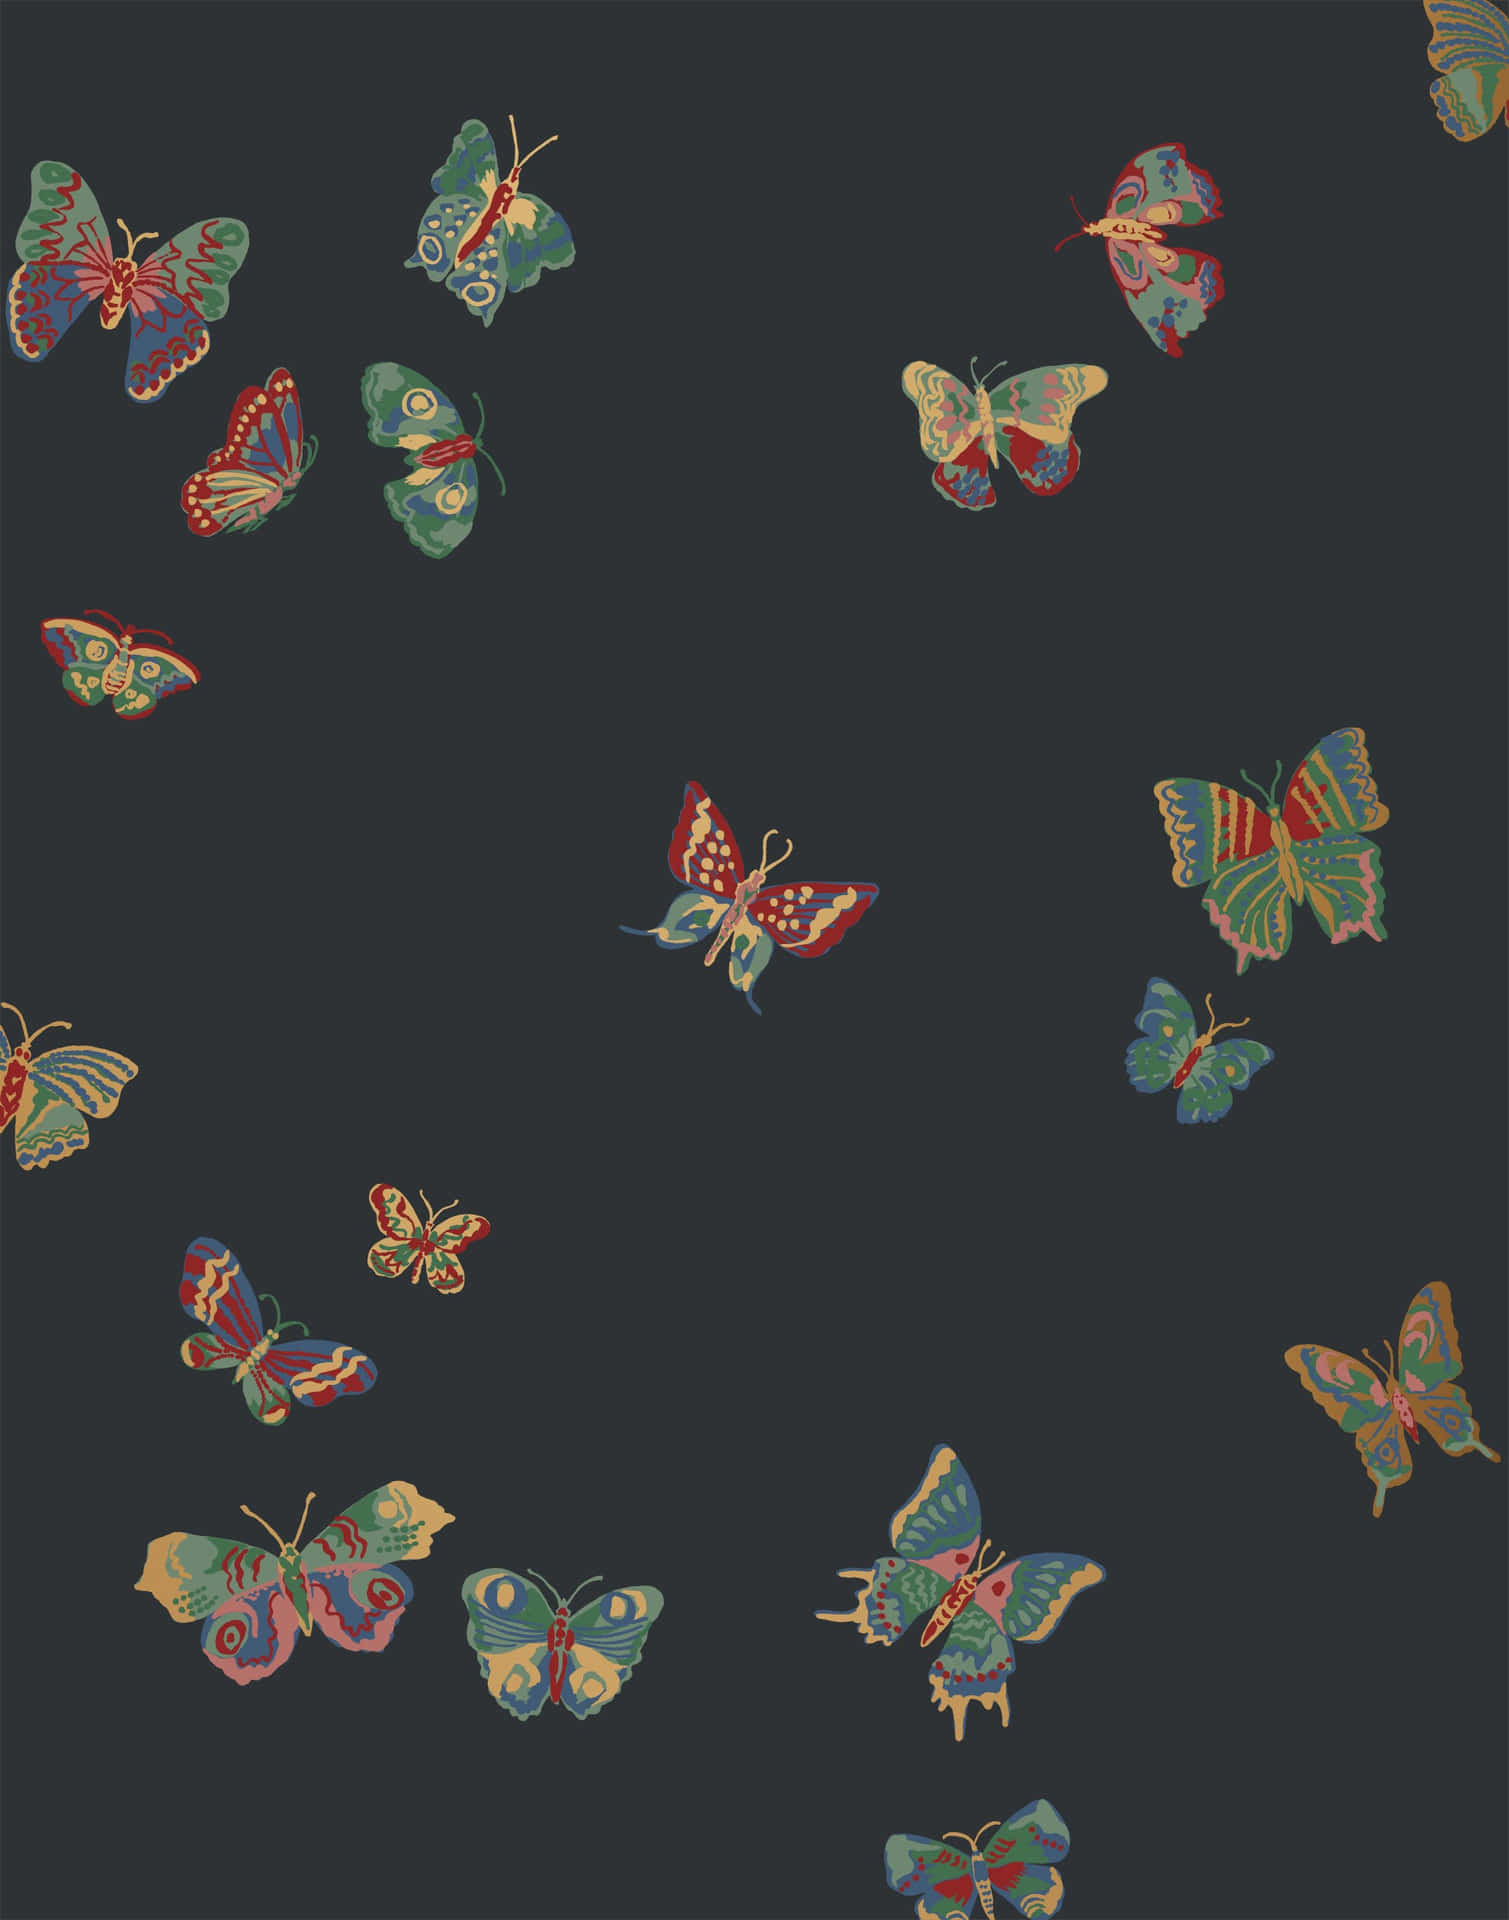 Imagenuna Impresionante Imagen De Una Mariposa Verde Posada Sobre Una Hoja De Hierba. Fondo de pantalla